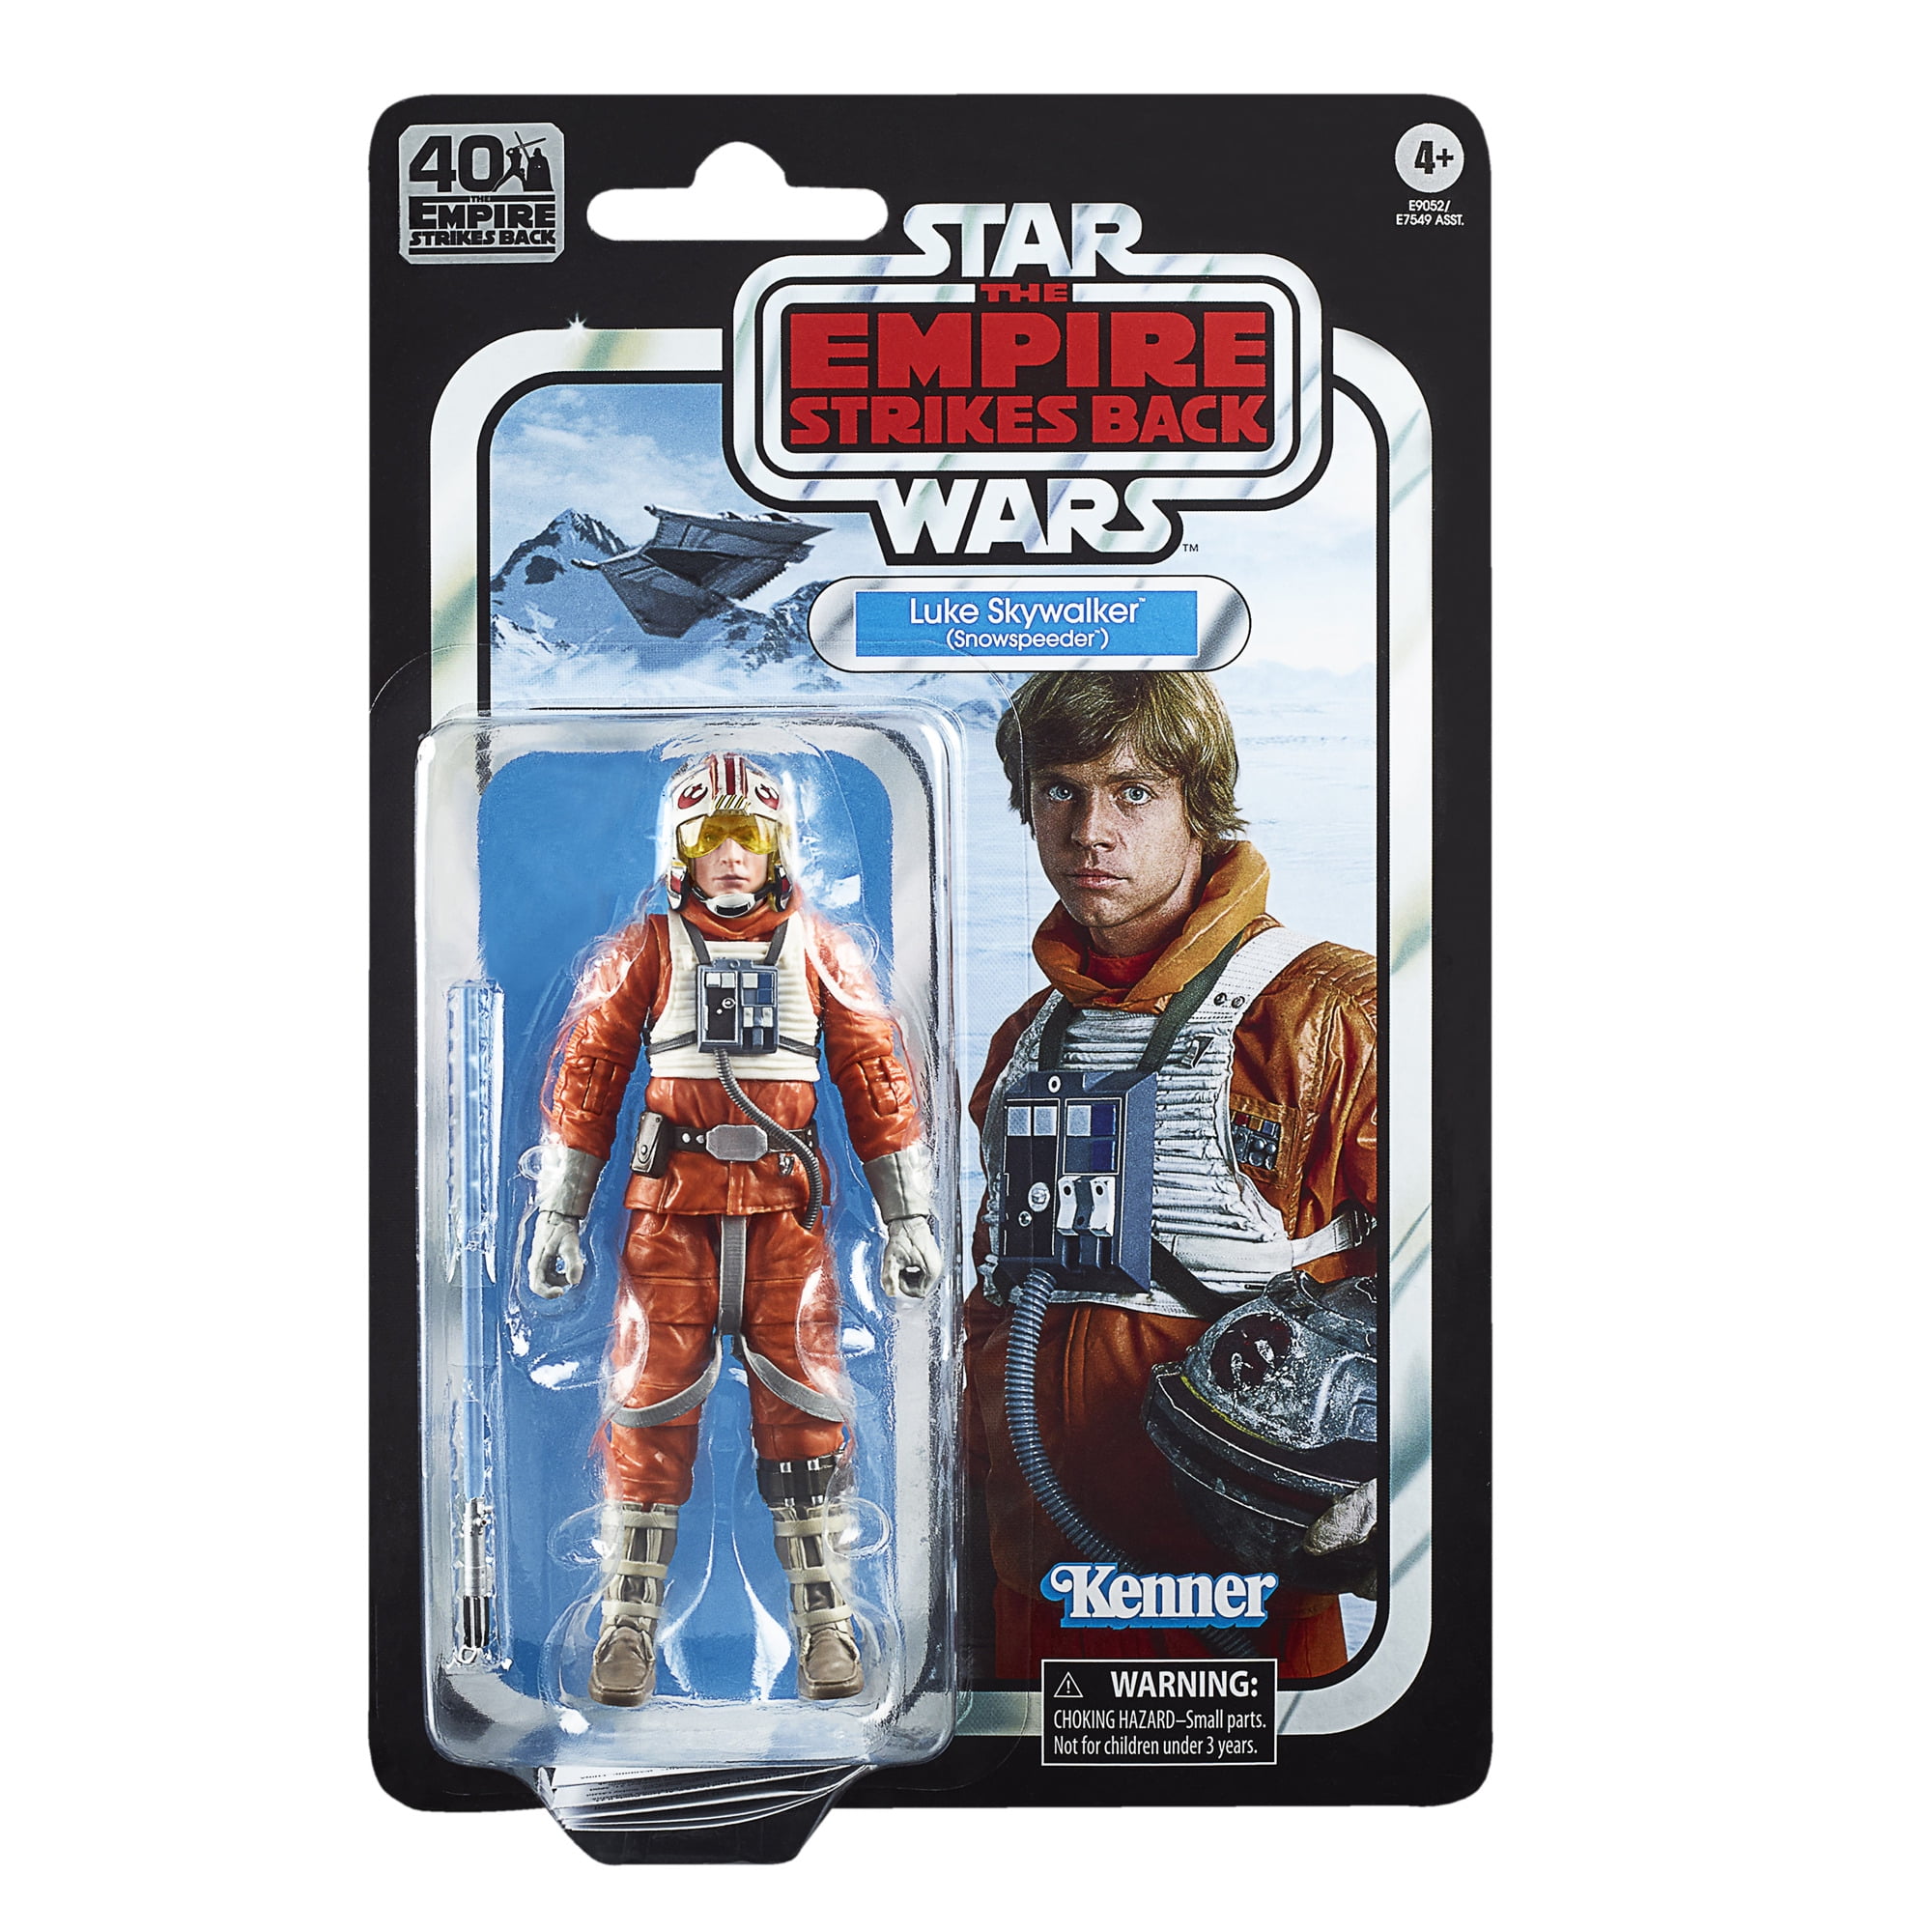 Star Wars Retro Collection ESB Luke Skywalker Snowspeeder 3.75" Action Figure 